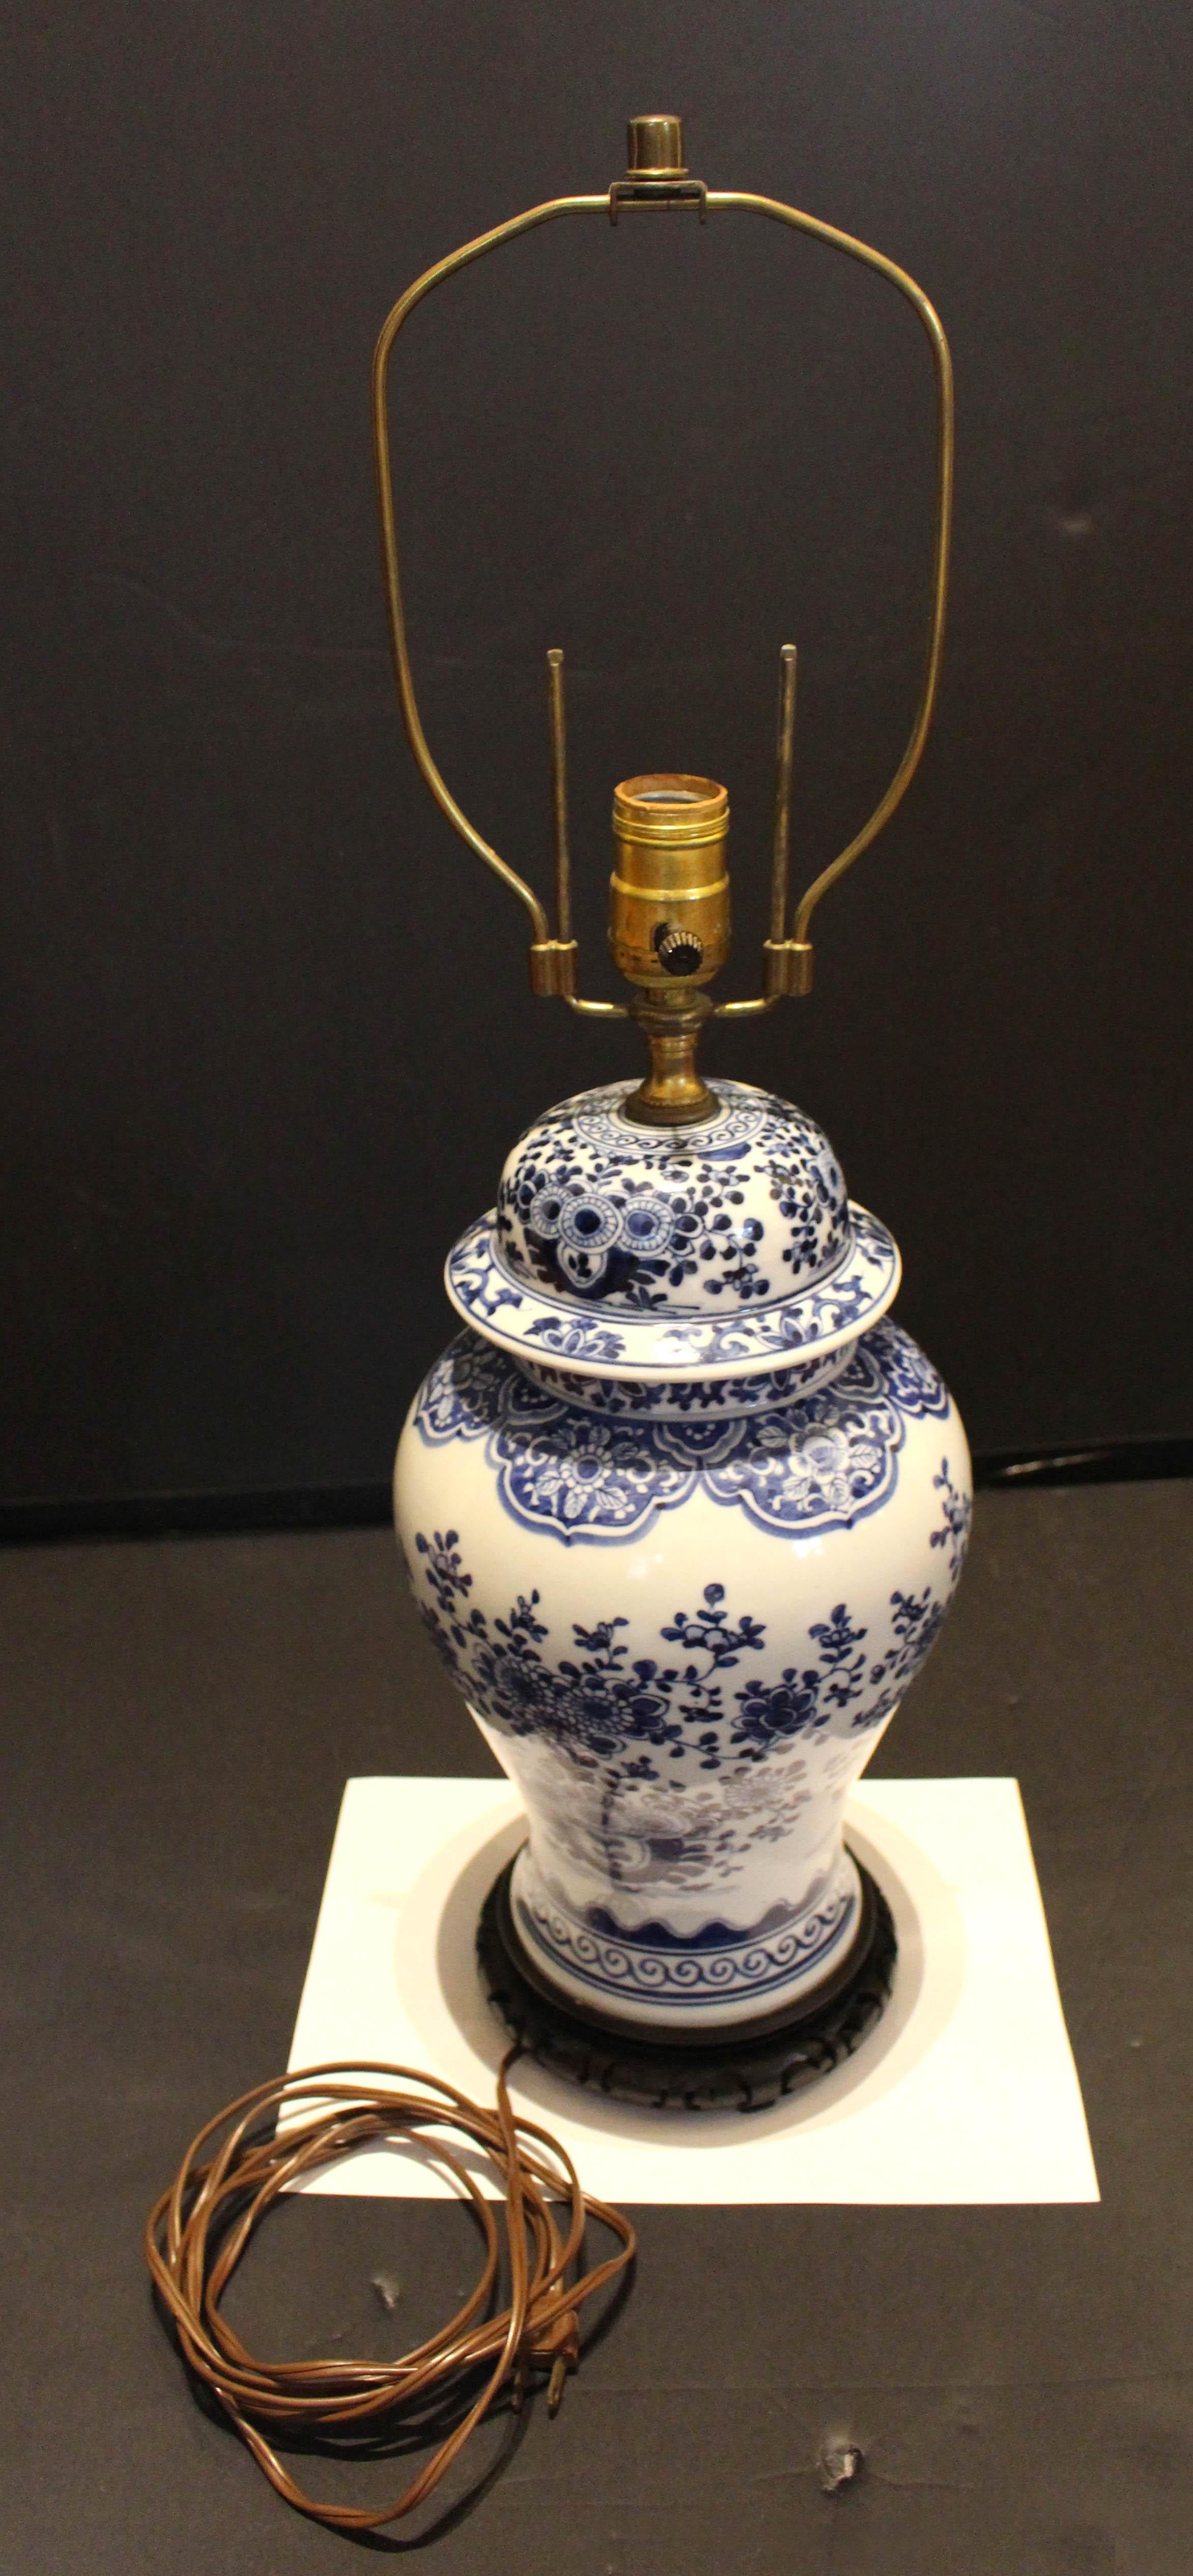 Lampe à pot de gingembre couverte de la fin du 19e siècle, chinoise. Porcelaine bleu et blanc. Probablement transformé en lampe au milieu du 20e siècle. Attrayante forme balustre, bien décorée de grands arbres fleuris en pot et de motifs